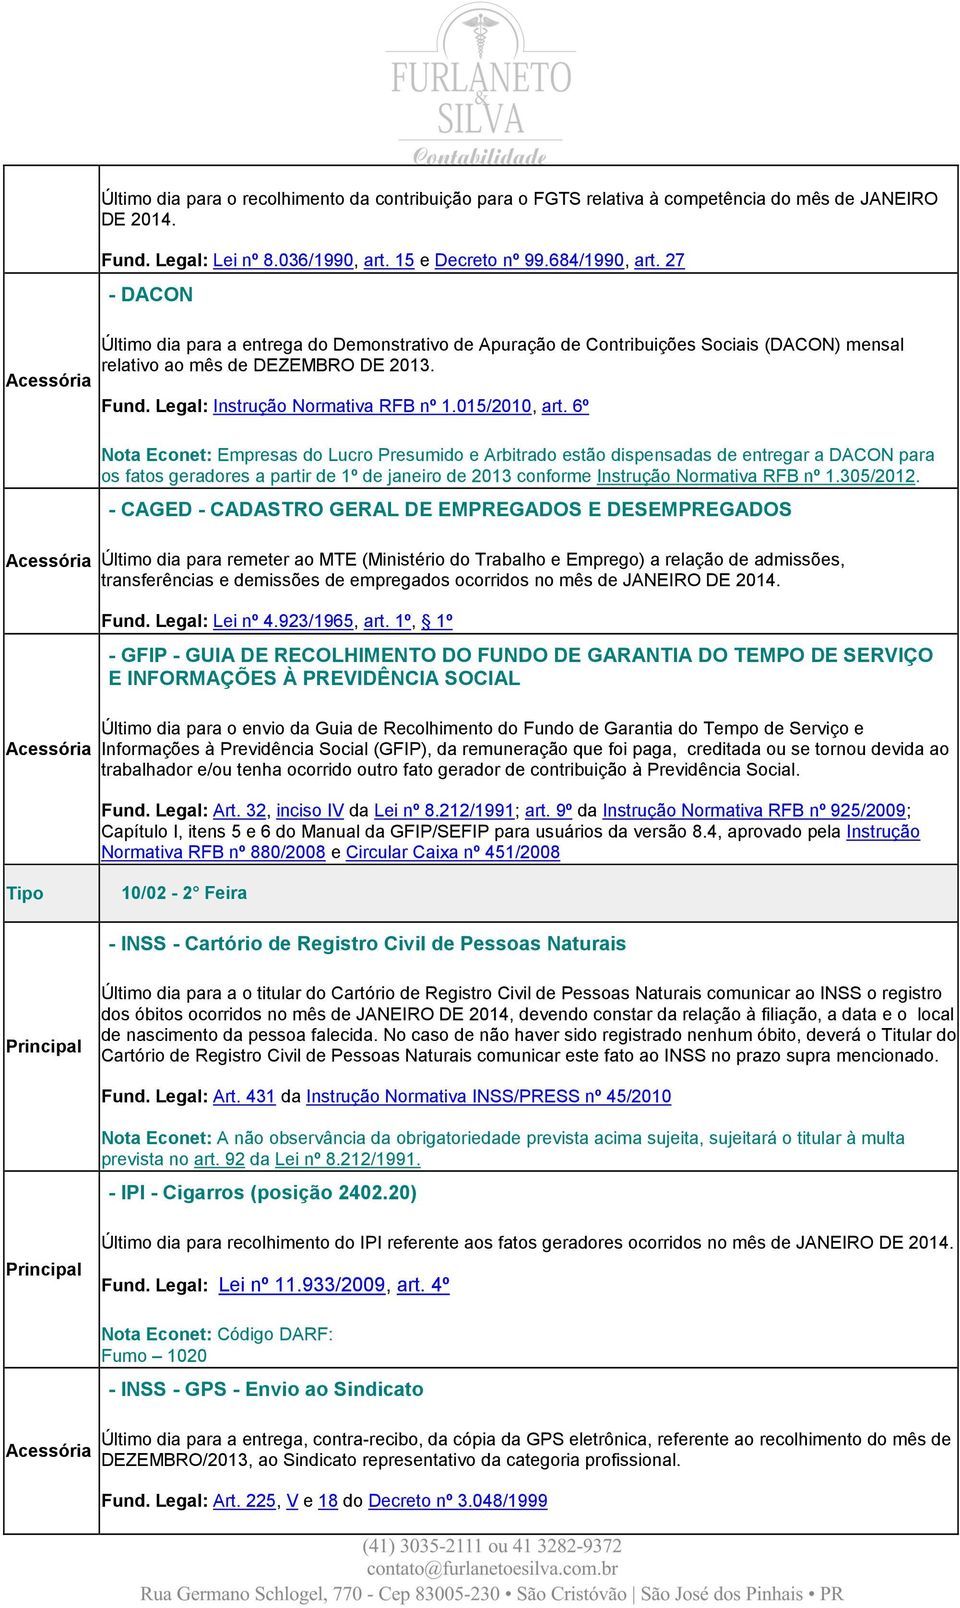 6º Nota Econet: Empresas do Lucro Presumido e Arbitrado estão dispensadas de entregar a DACON para os fatos geradores a partir de 1º de janeiro de 2013 conforme Instrução Normativa RFB nº 1.305/2012.